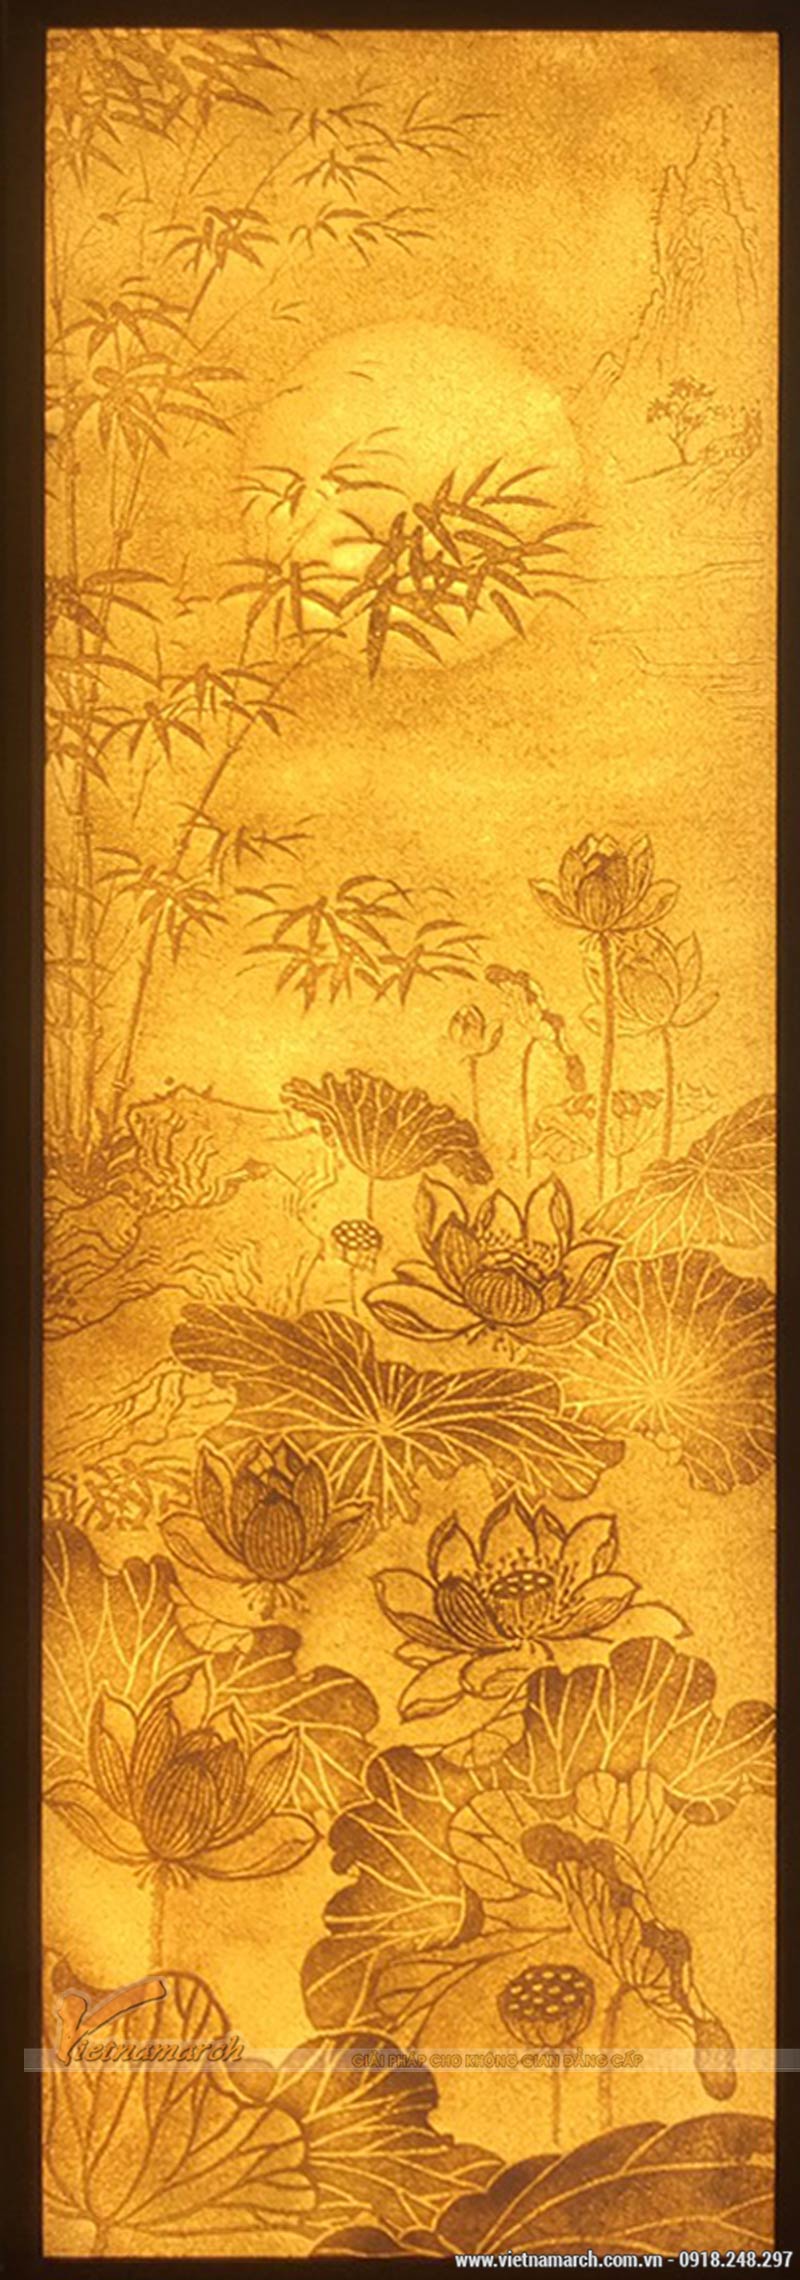 Mẫu tranh giấy dừa đẹp